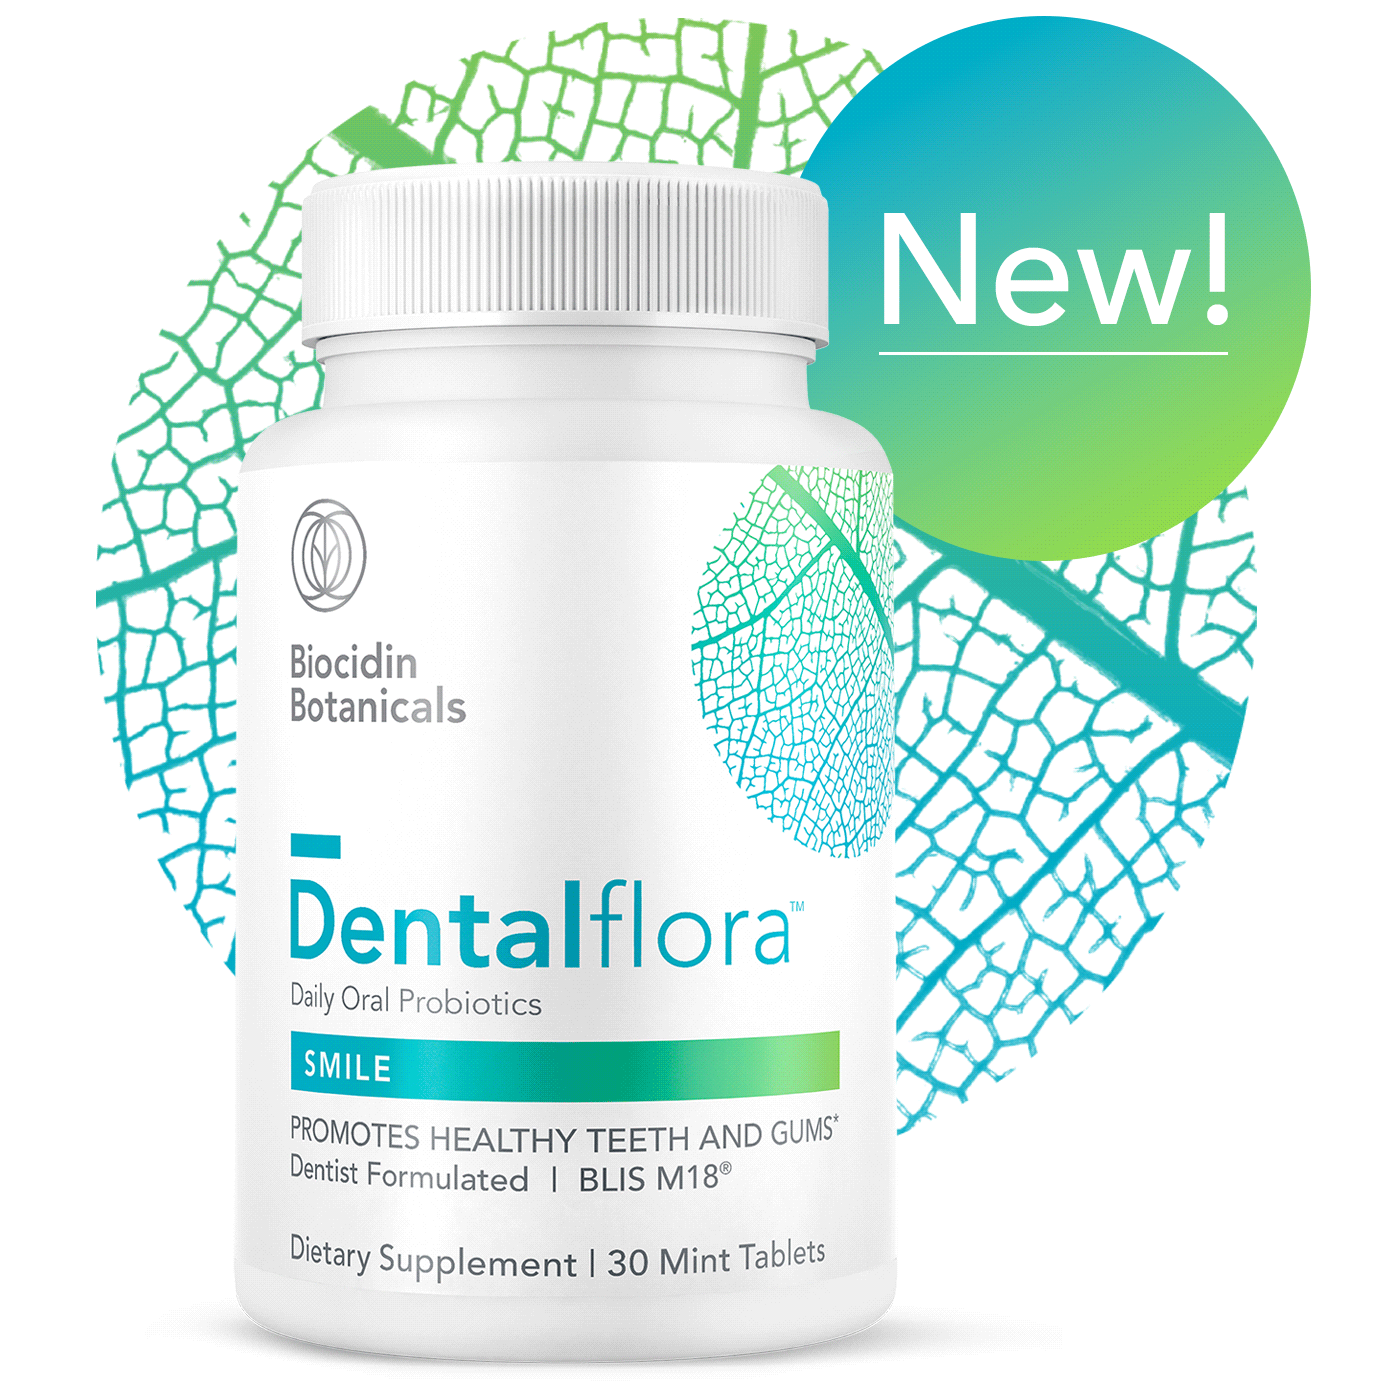 Dentalflora™ Daily Oral Probiotics